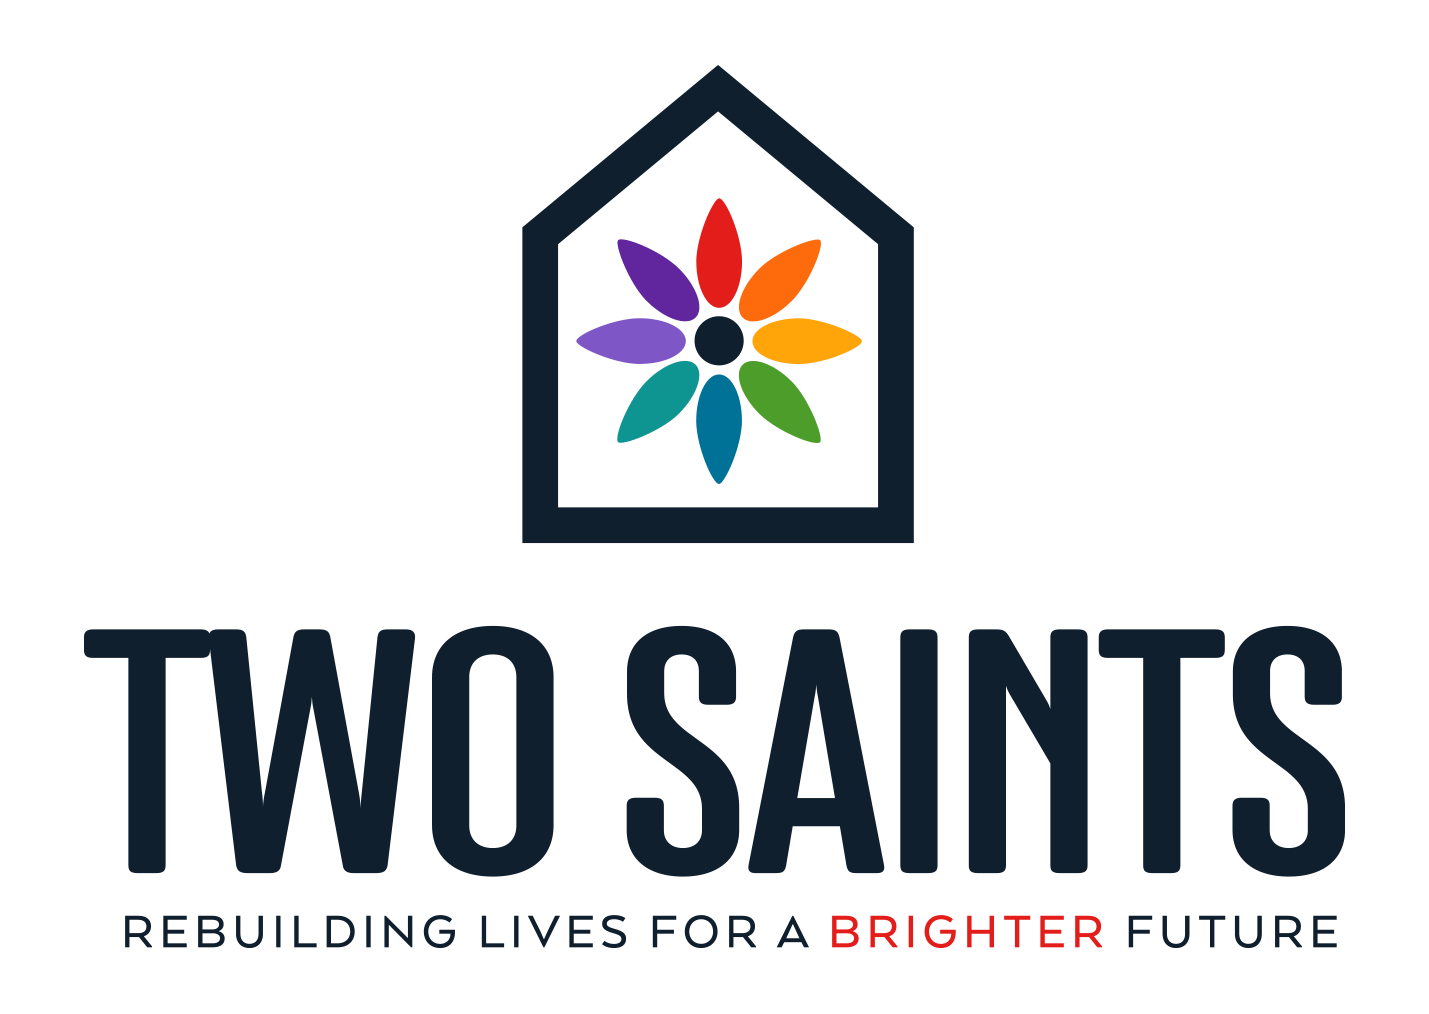 Two-saints-logo